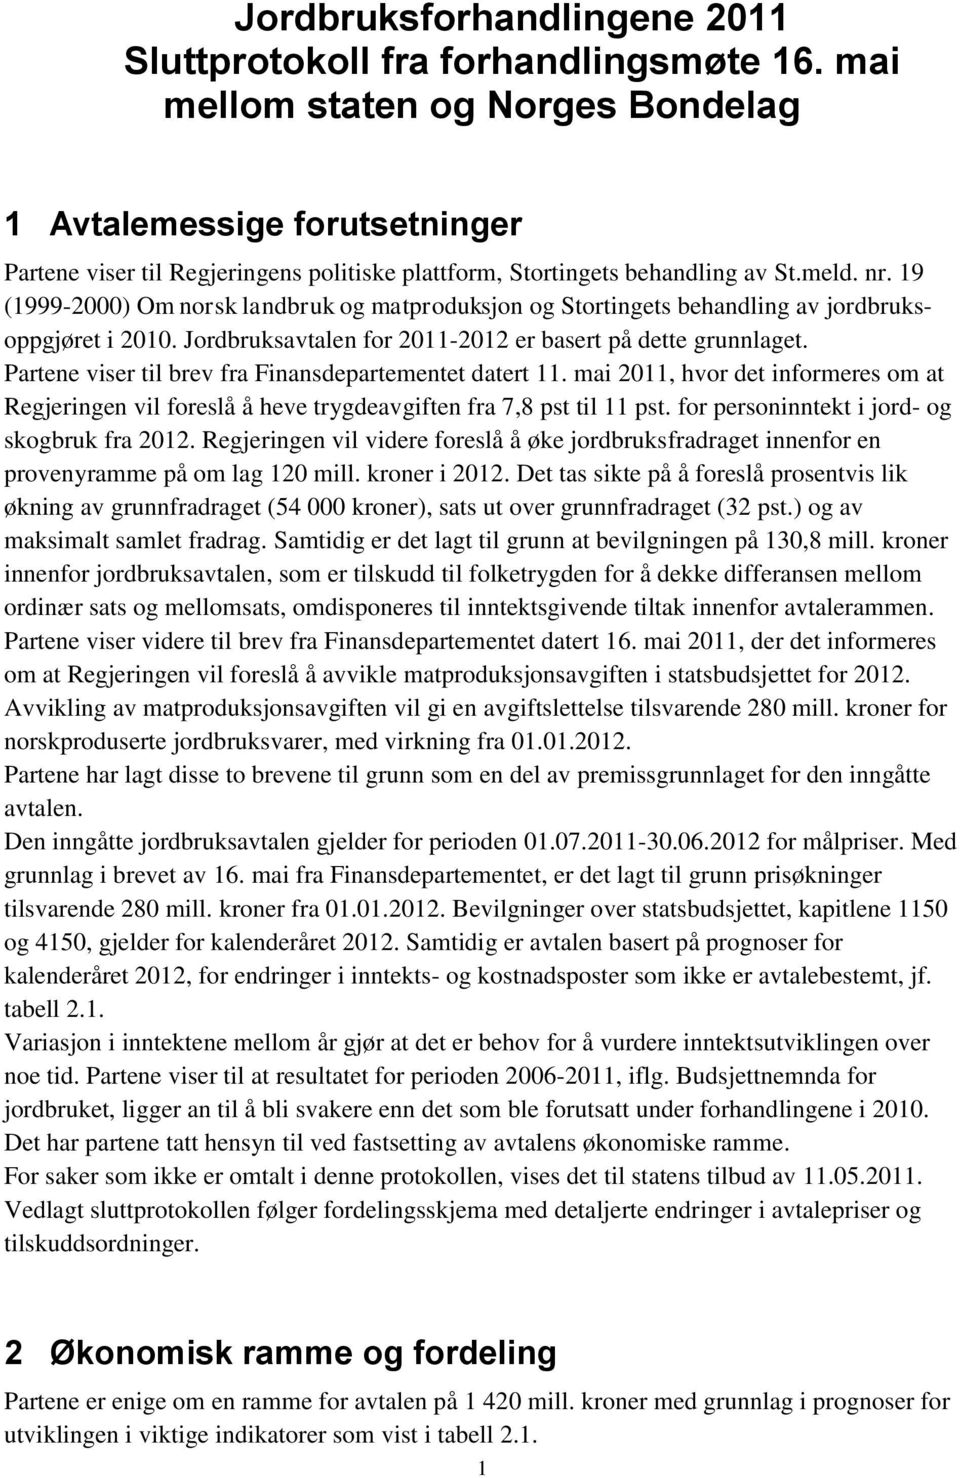 19 (1999-2000) Om norsk landbruk og matproduksjon og Stortingets behandling av jordbruksoppgjøret i 2010. Jordbruksavtalen for 2011-2012 er basert på dette grunnlaget.